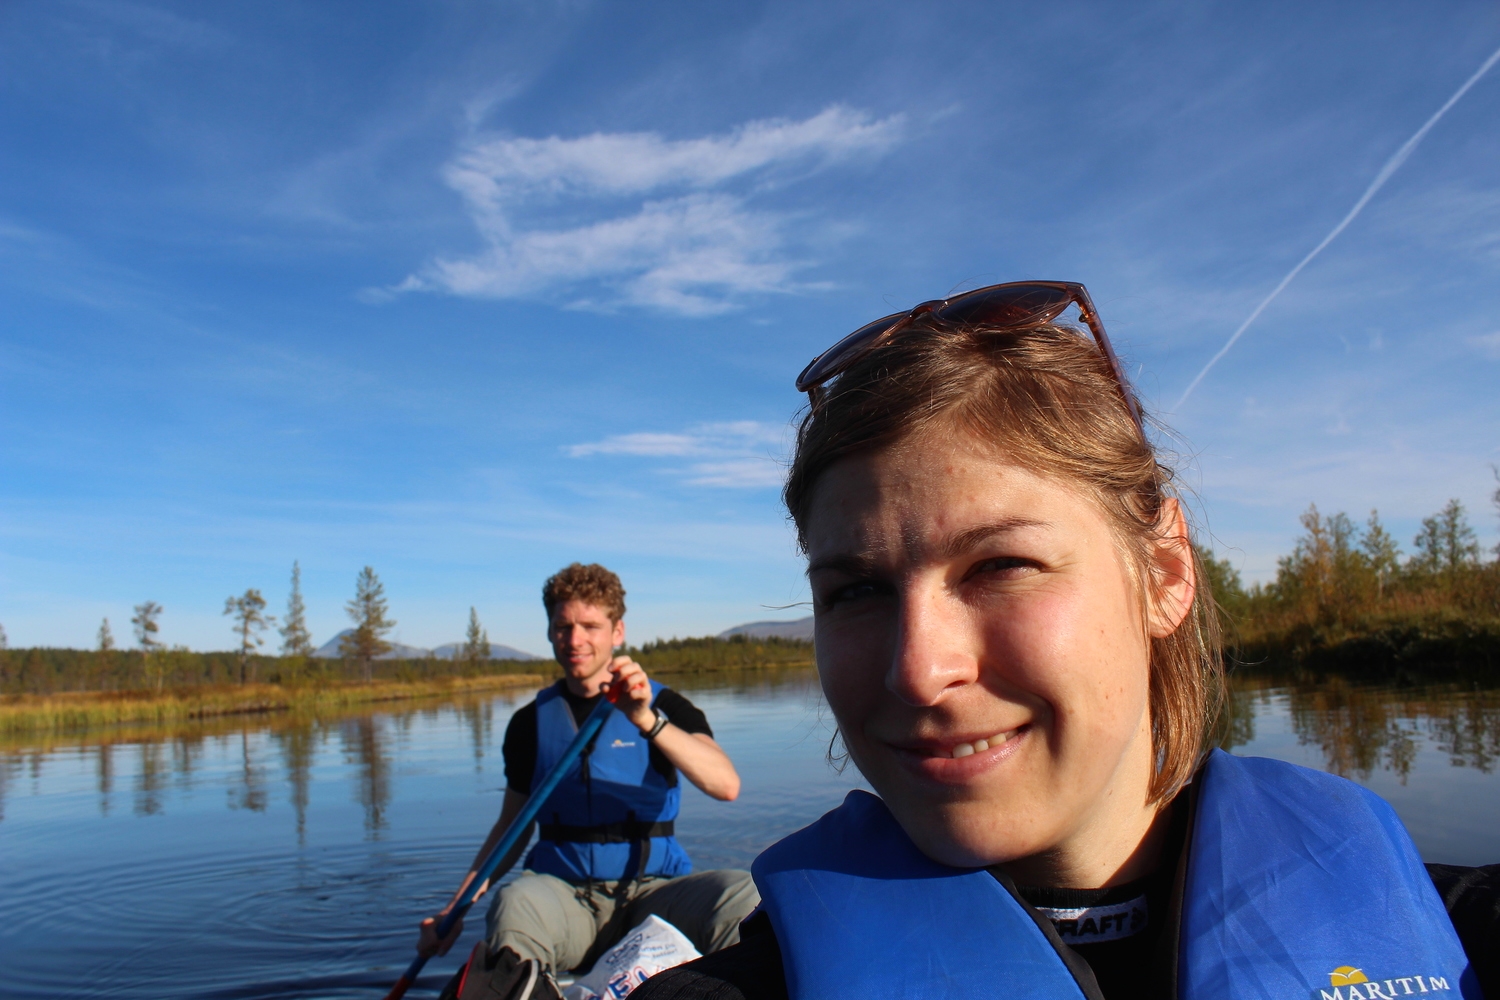  2014. Canoe trip Sølensjøen, Rick and Karin (current hosts/owners) 